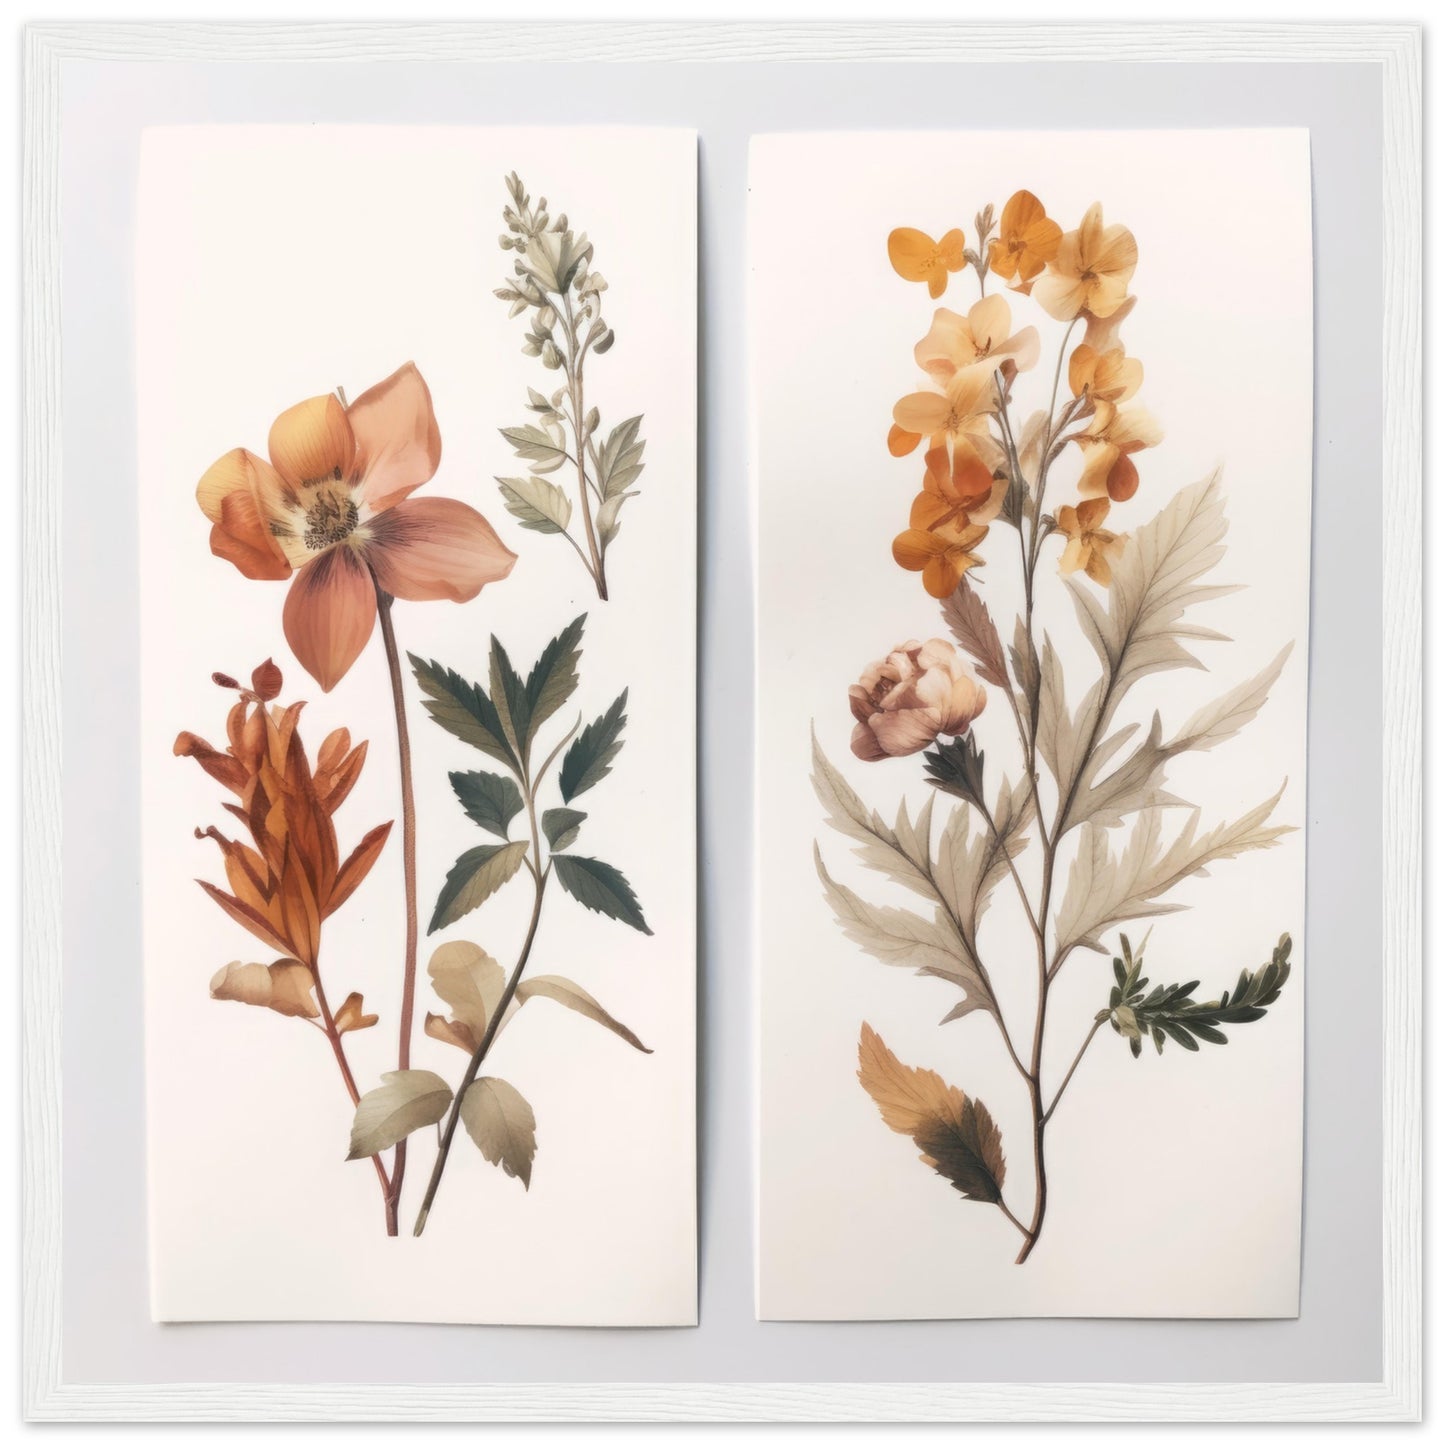 Elegance - Botanical Artwork #1- Print Room Ltd White frame 70x70 cm / 28x28"